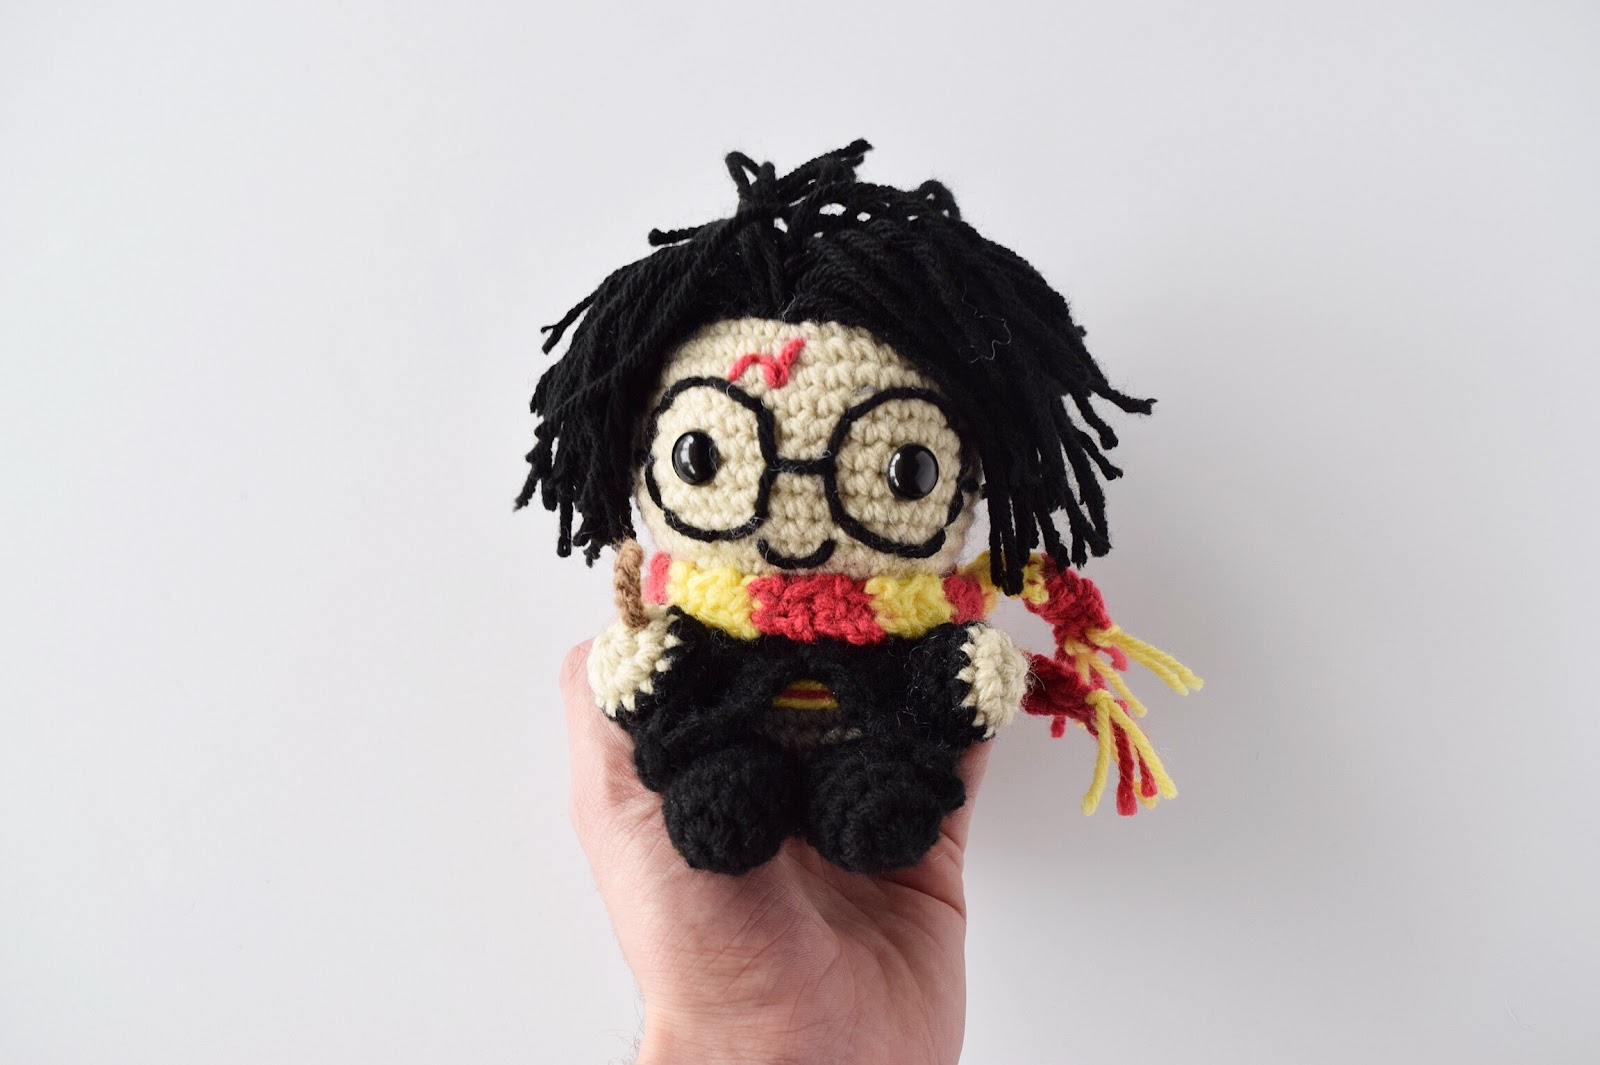 Harry Potter Crochet Kit Bundle